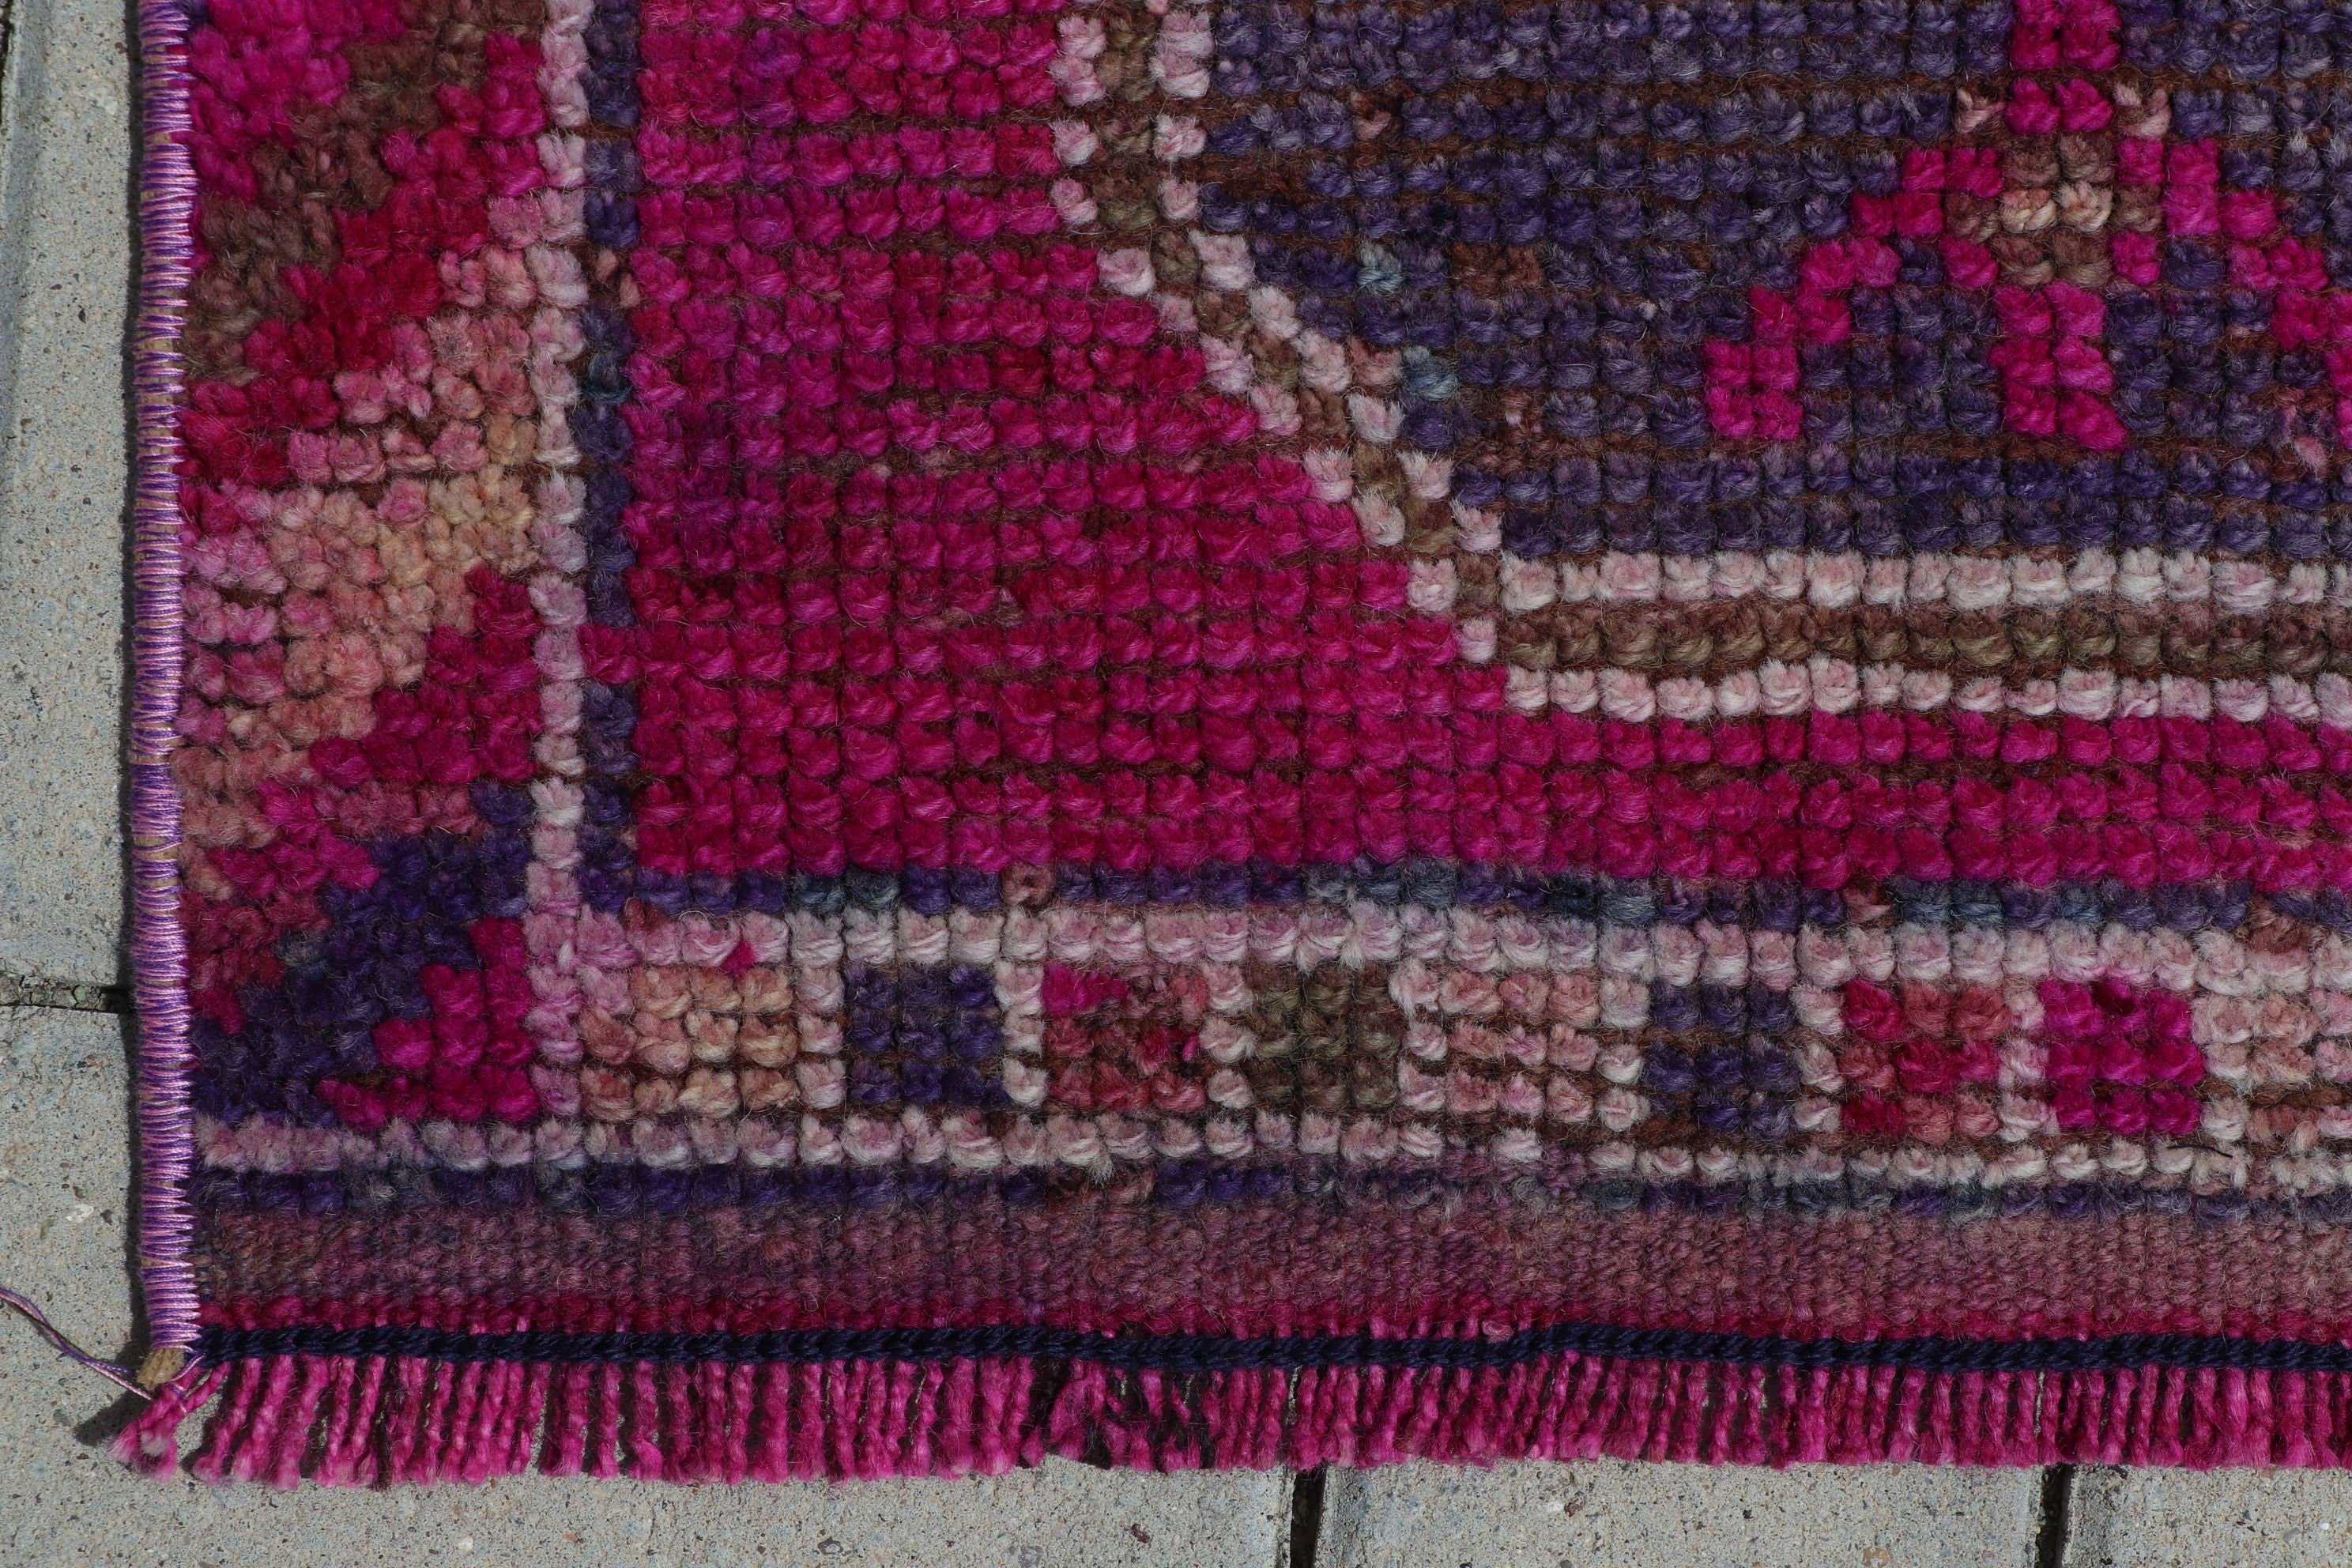 Vintage Rugs, Retro Rug, Floor Rug, Pink Oriental Rug, Turkish Rugs, Corridor Rugs, 3.2x12 ft Runner Rug, Rugs for Runner, Home Decor Rug